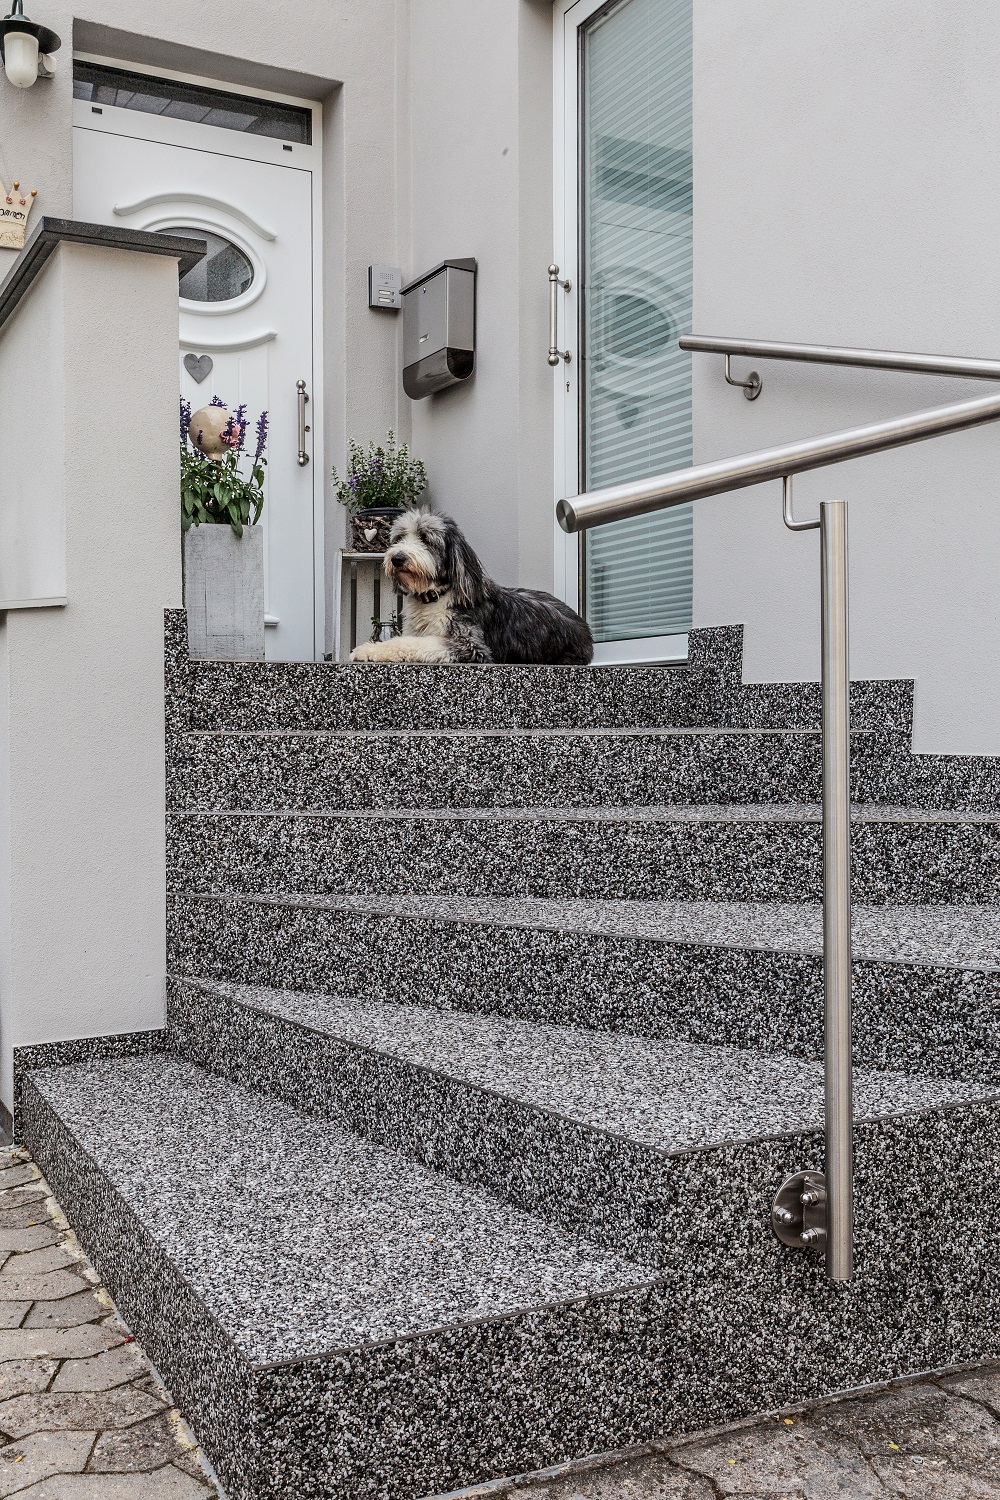 Hauseingang mit einer markanten granitähnlichen Treppe. Die Treppe besteht aus mehreren Stufen und ist mit einem Edelstahl-Geländer ausgestattet. Auf einer der oberen Stufen liegt ein Hund, der anscheinend auf seinen Besitzer wartet oder einfach nur die Umgebung beobachtet. Der Hund hat ein flauschiges Fell und scheint von mittlerer Größe zu sein. Rechts von der Treppe befindet sich eine weiße Wand mit einem Fenster, während sich links eine weiße Eingangstür mit einem darüberliegenden halbrunden Fenster befindet. An der Wand neben der Tür hängen Blumentöpfe mit blühenden Pflanzen. Das Gesamtbild vermittelt den Eindruck eines gepflegten und modern gestalteten Eingangsbereichs.